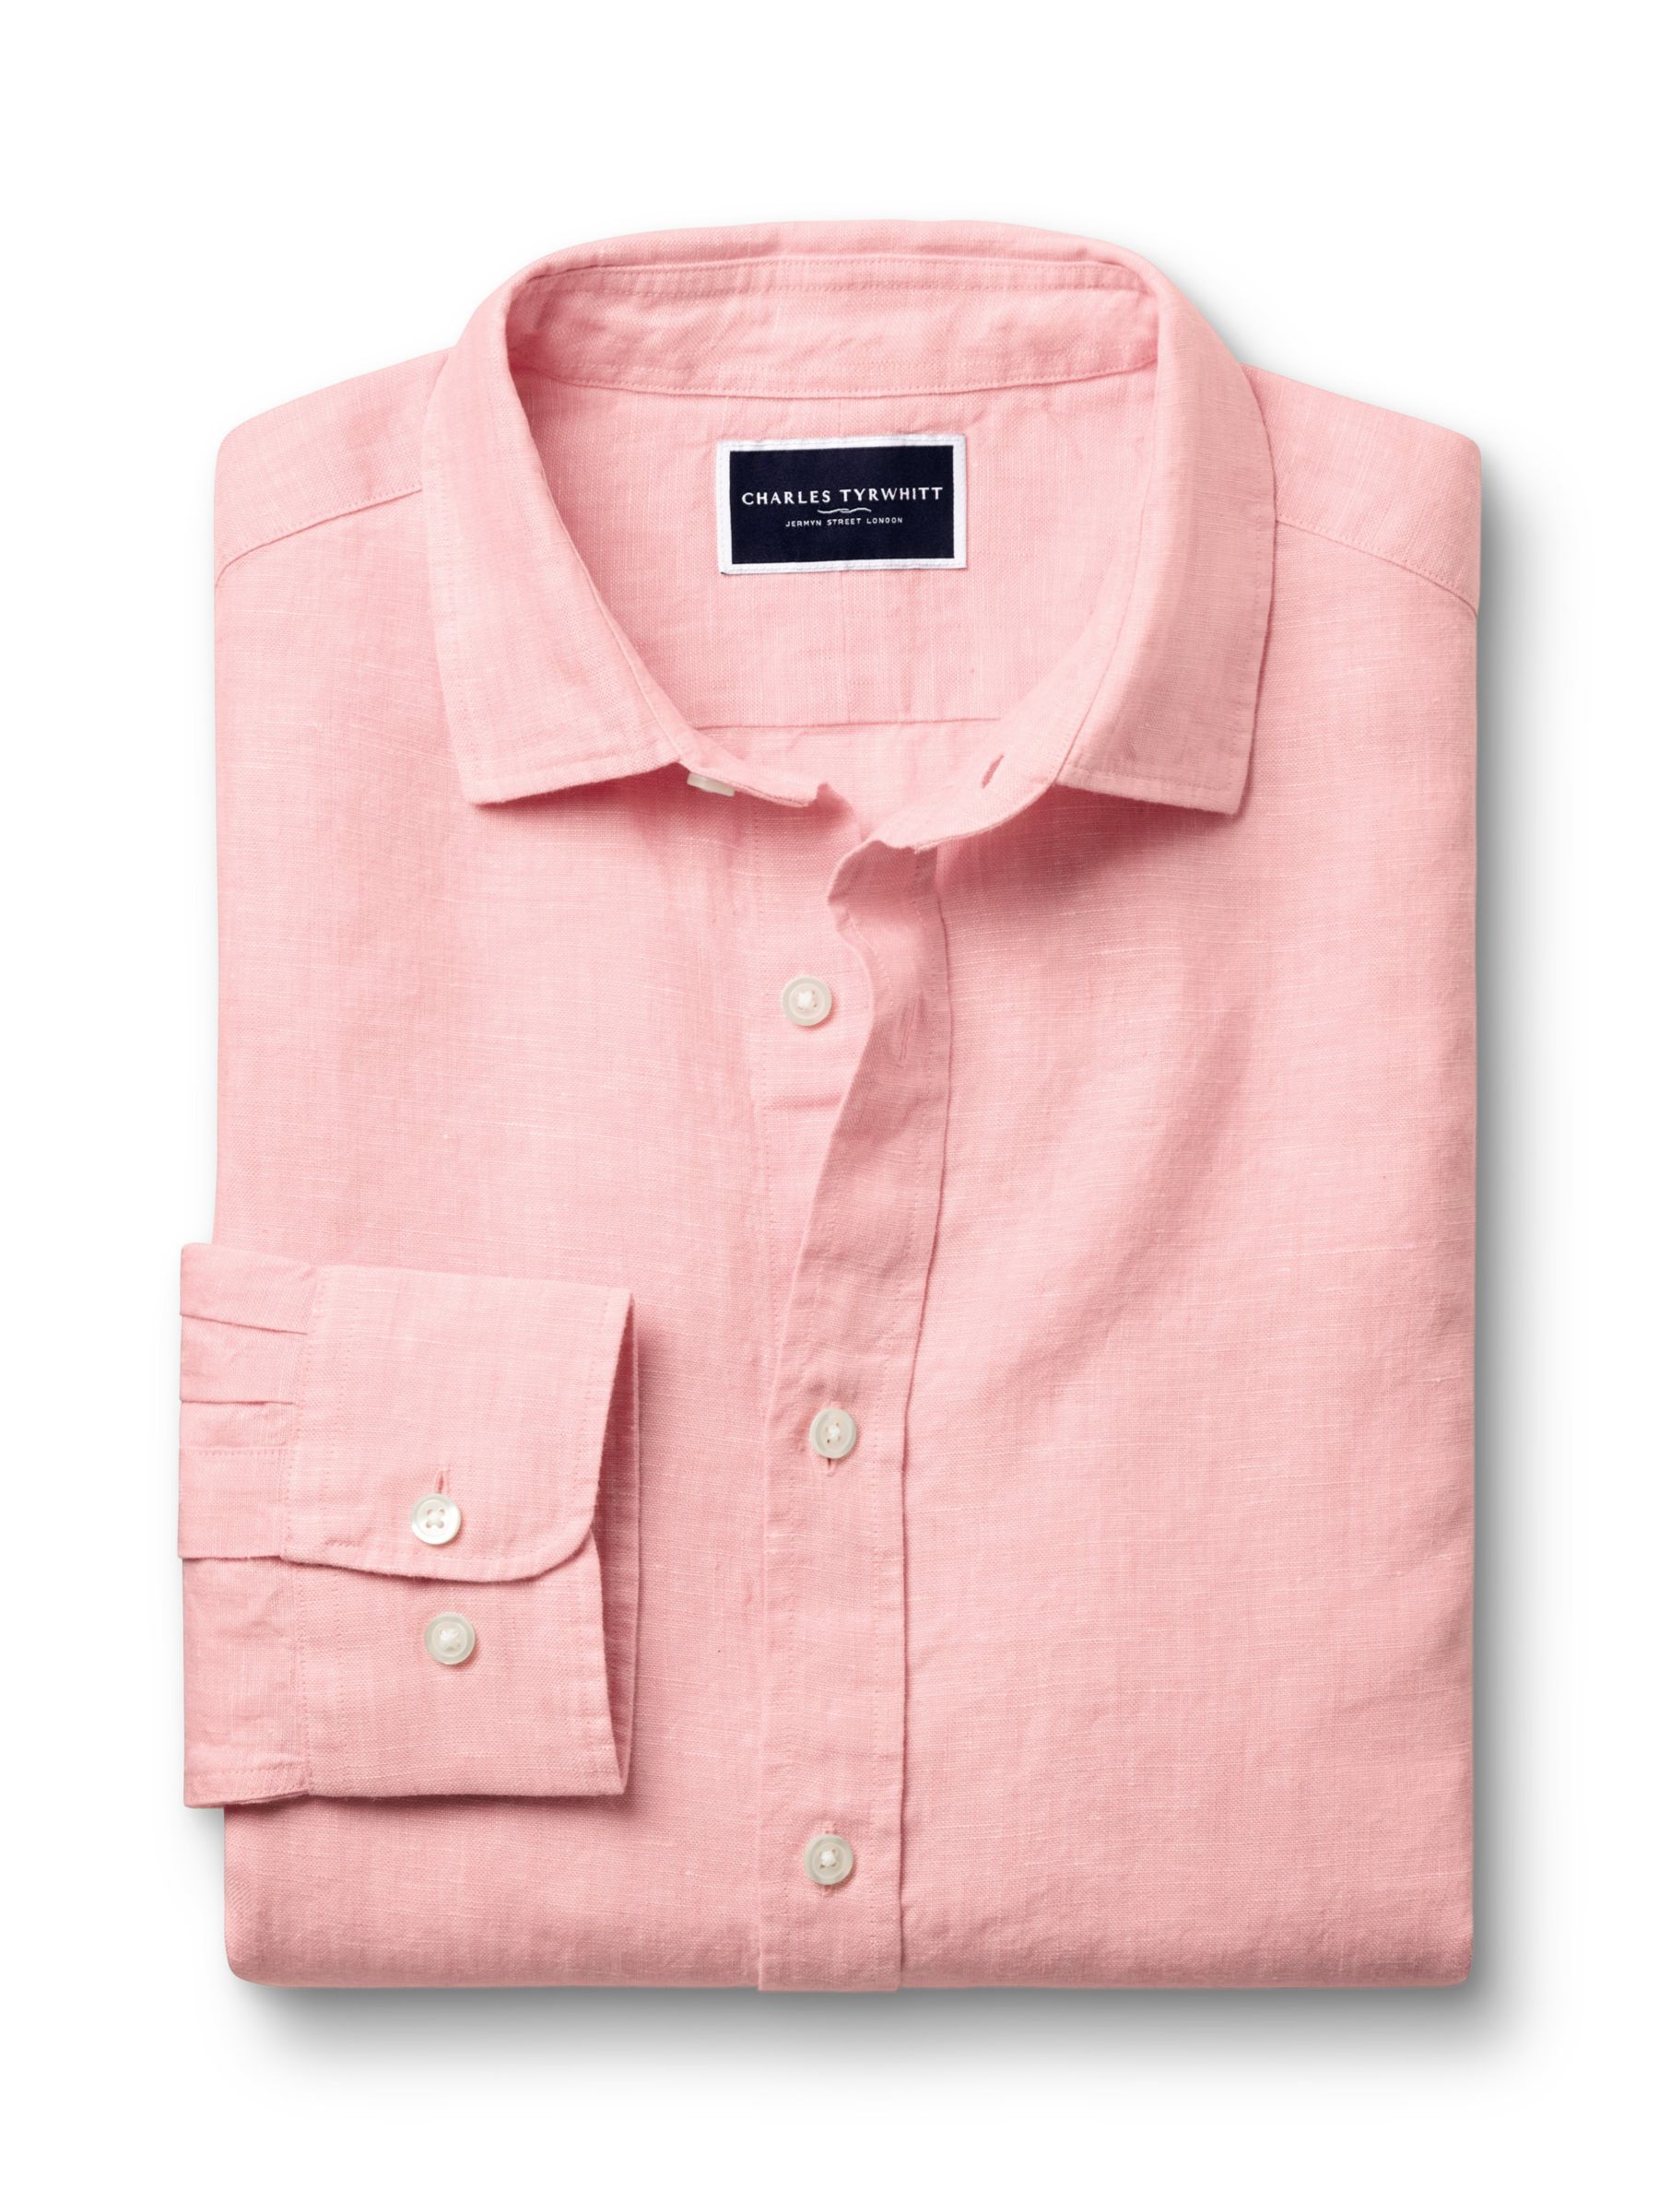 Buy Charles Tyrwhitt Slim Fit Linen Shirt Online at johnlewis.com